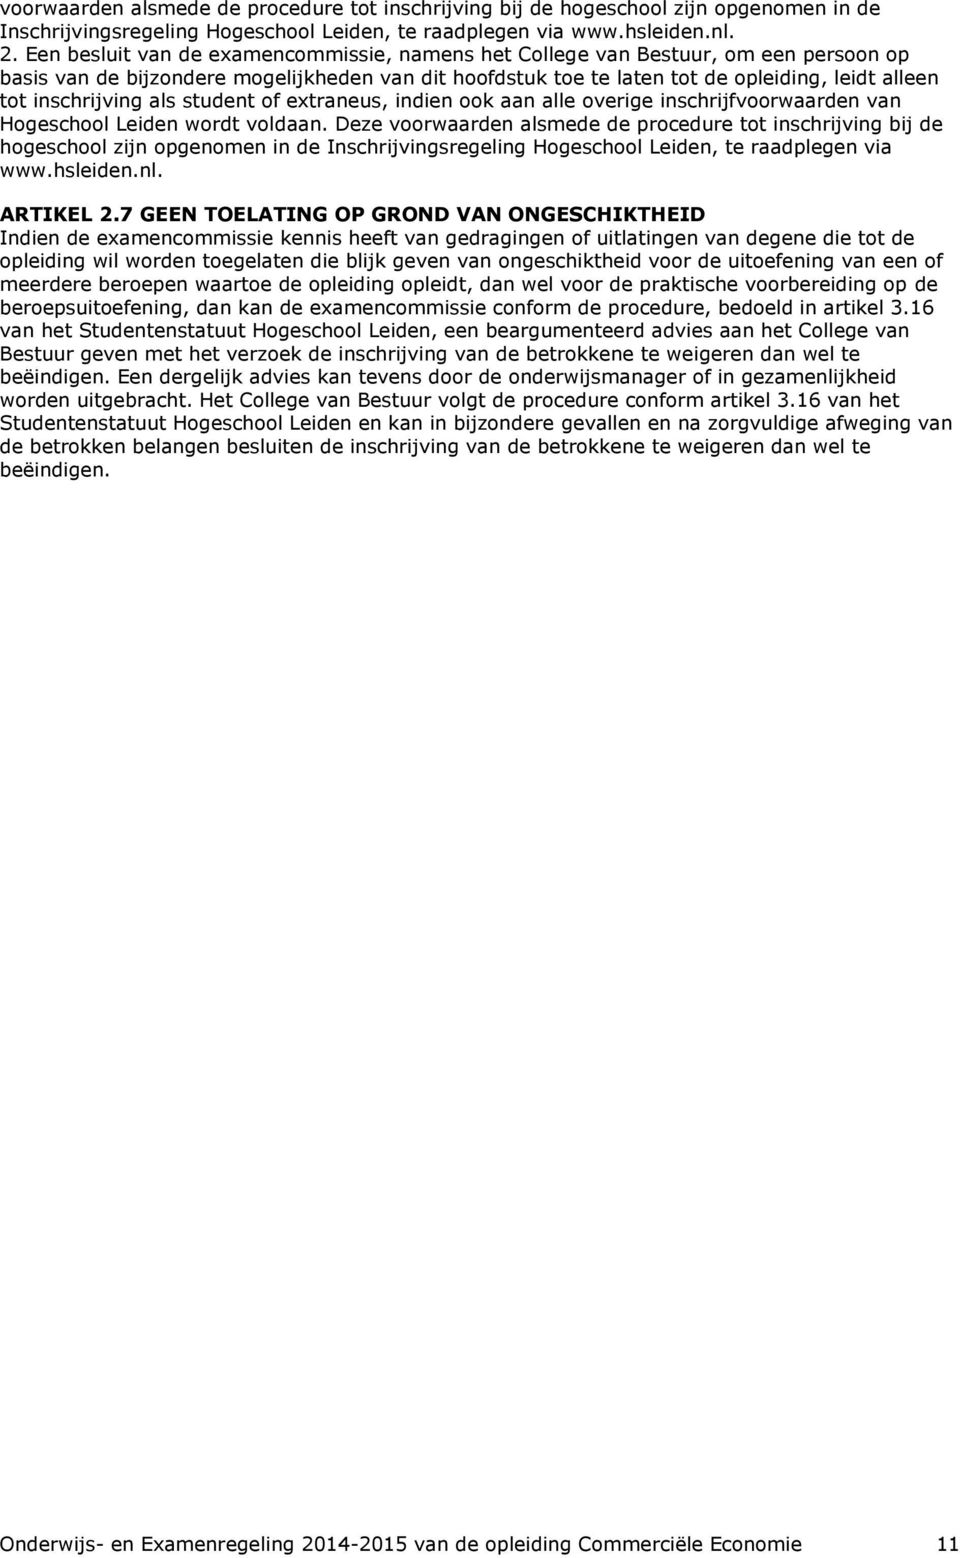 inschrijving als student of extraneus, indien ook aan alle overige inschrijfvoorwaarden van Hogeschool Leiden wordt voldaan.